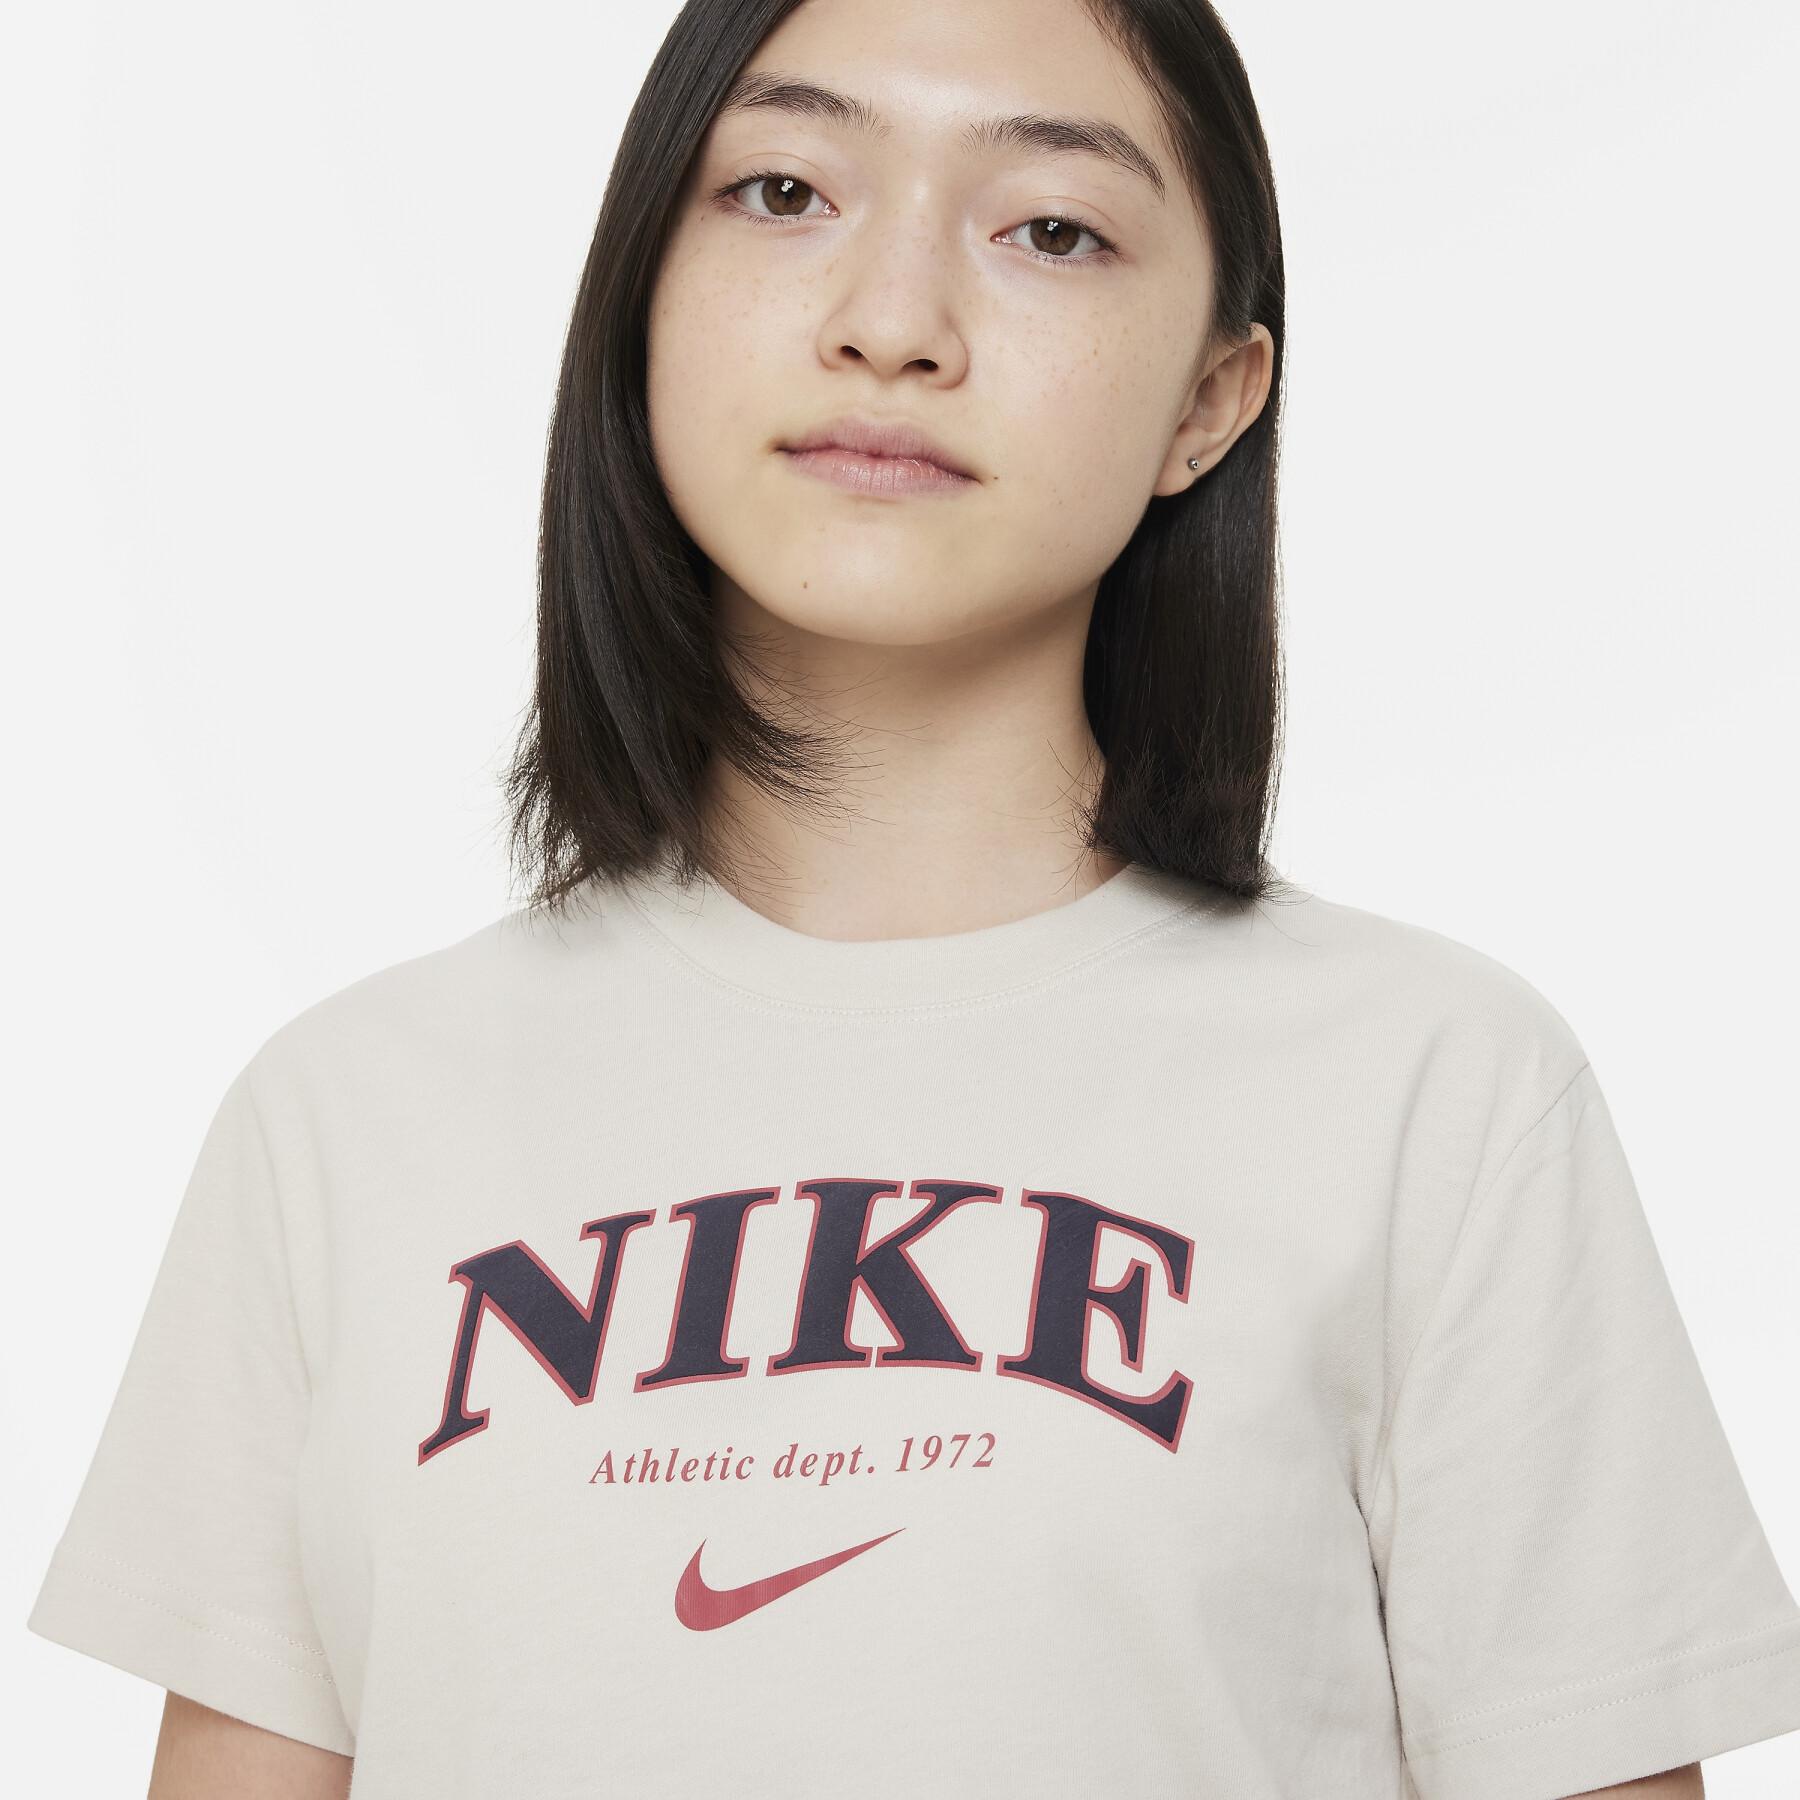 T-shirt de rapariga Nike Trend BF PrInt